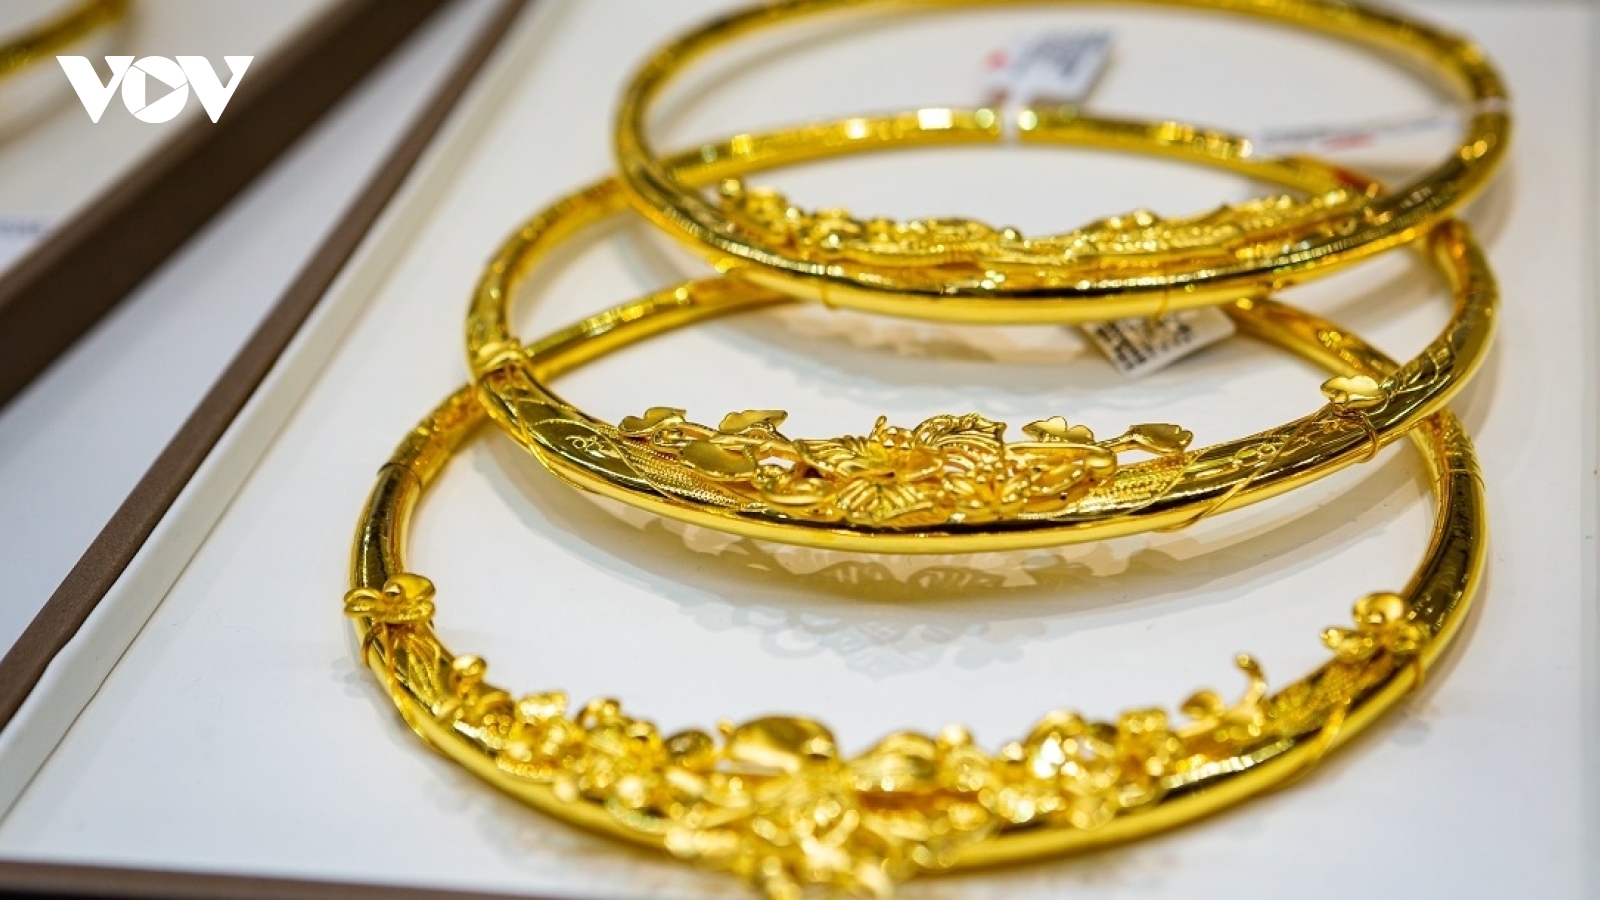 Giá vàng hôm nay 21/7: Vàng trong nước giảm ở mức 67,15 triệu đồng/lượng